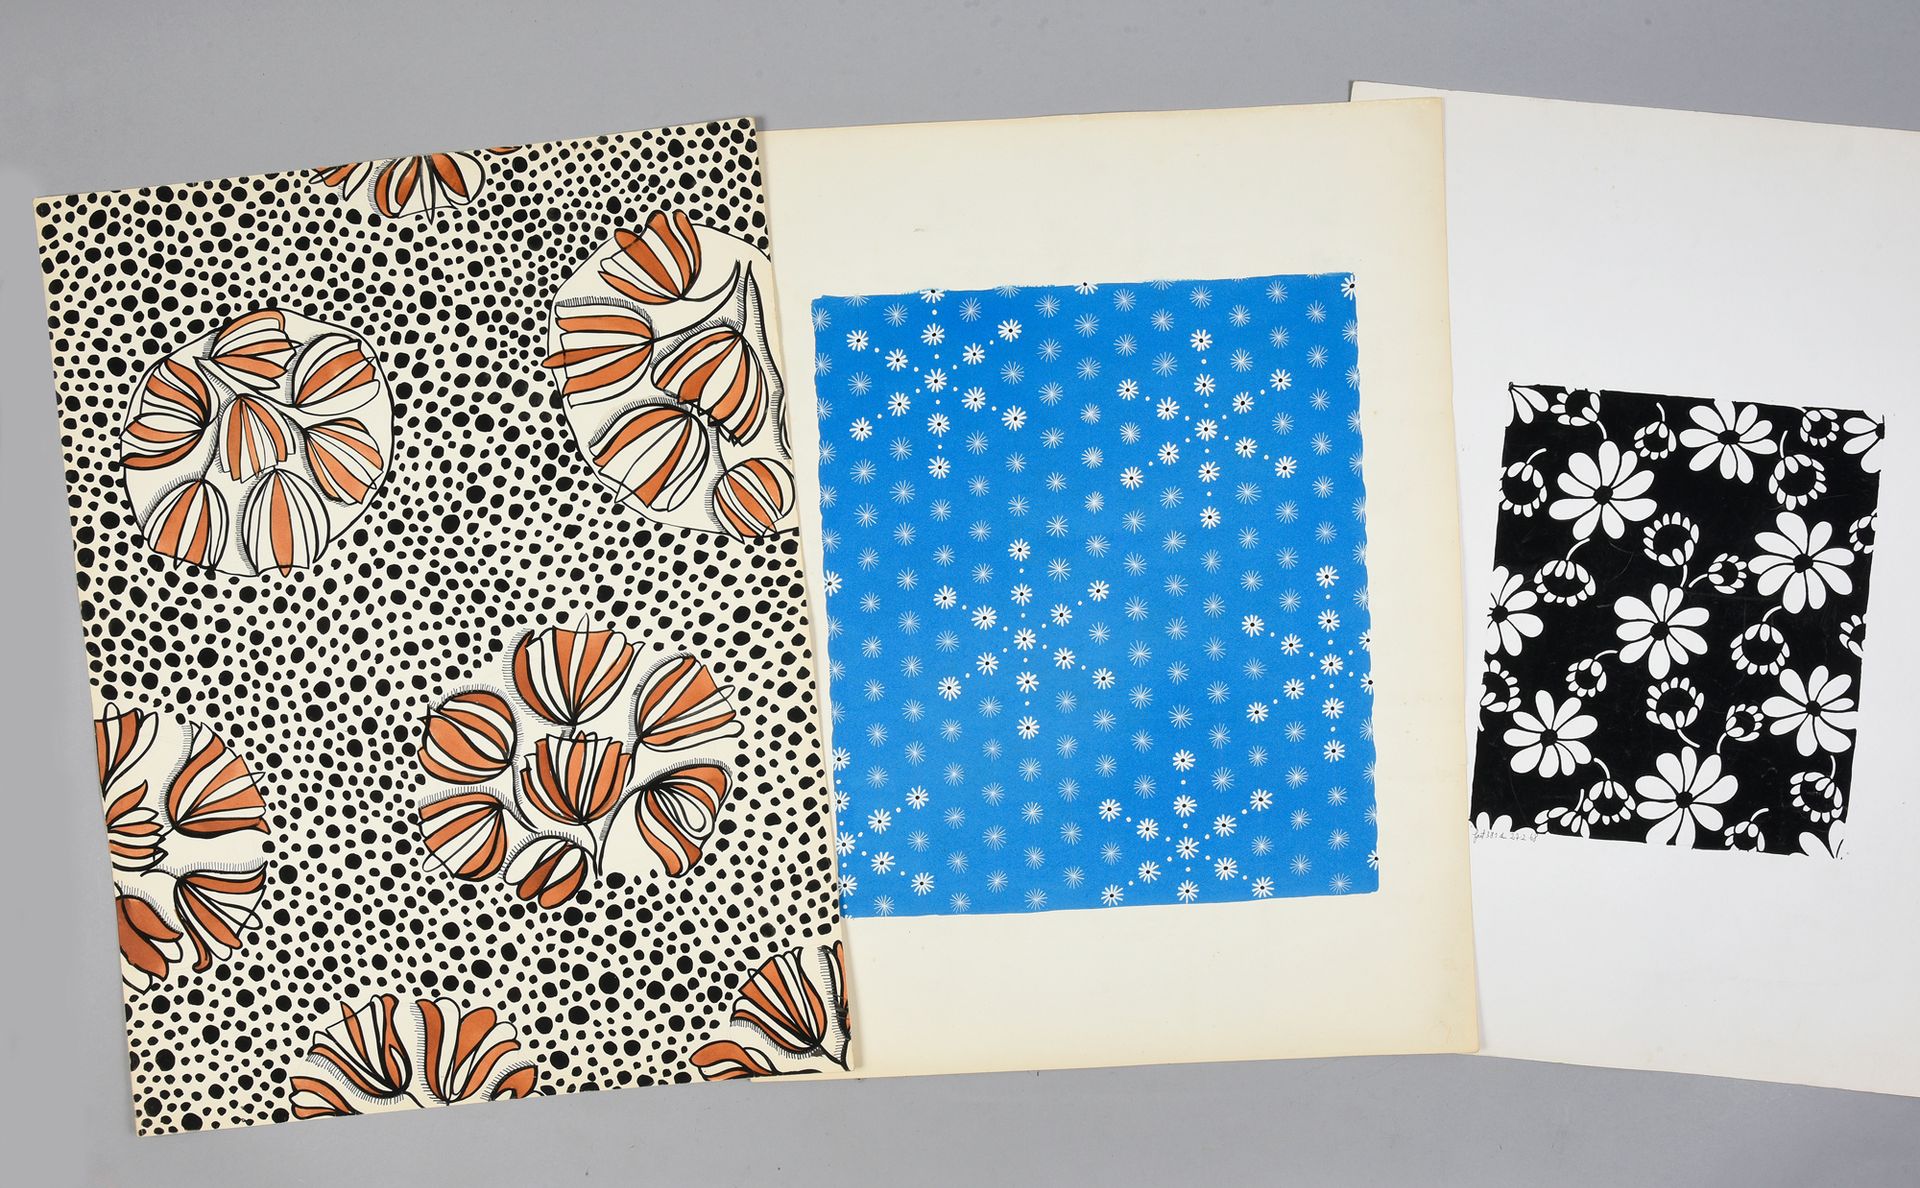 Null 一组时尚织物模型，1950-1970年左右，水粉和墨水在纸上；美丽的各种大型花卉设计，主要包括1970年代典型颜色的雏菊楣，雏菊和星星或郁金香。
大约&hellip;